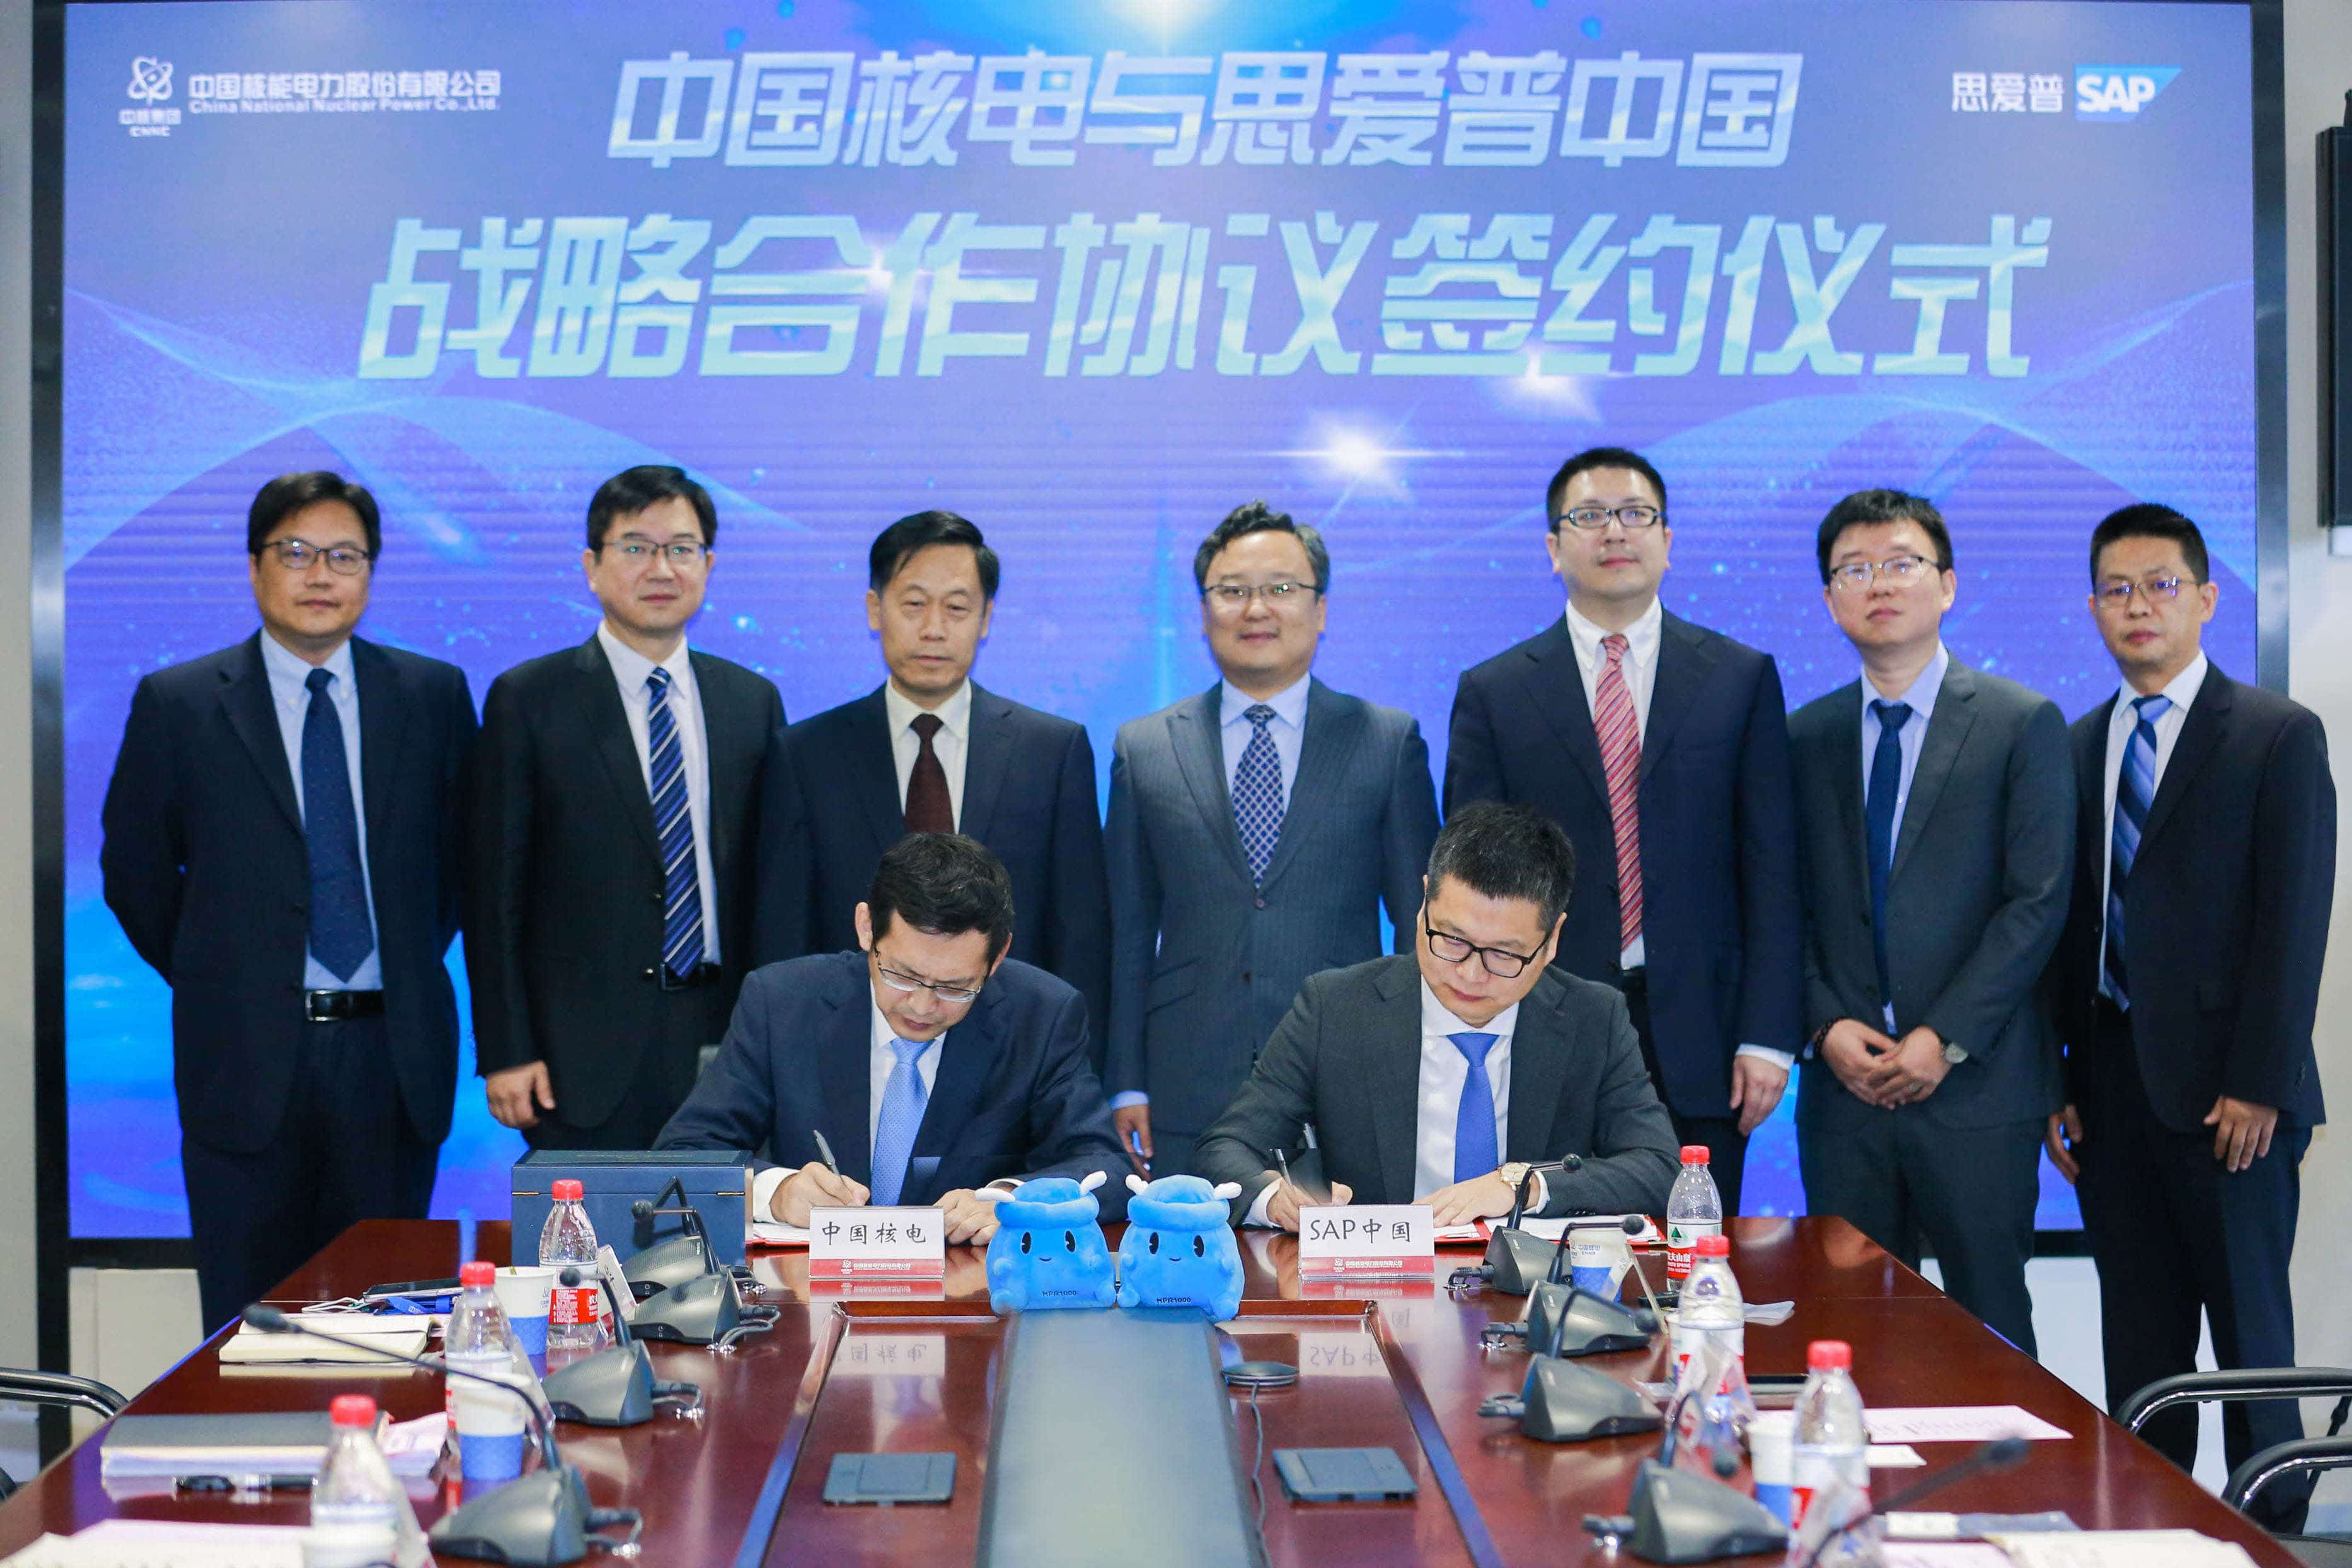 中国核电与SAP中国举行战略合作签约仪式中国核电与SAP中国举行战略合作签约仪式